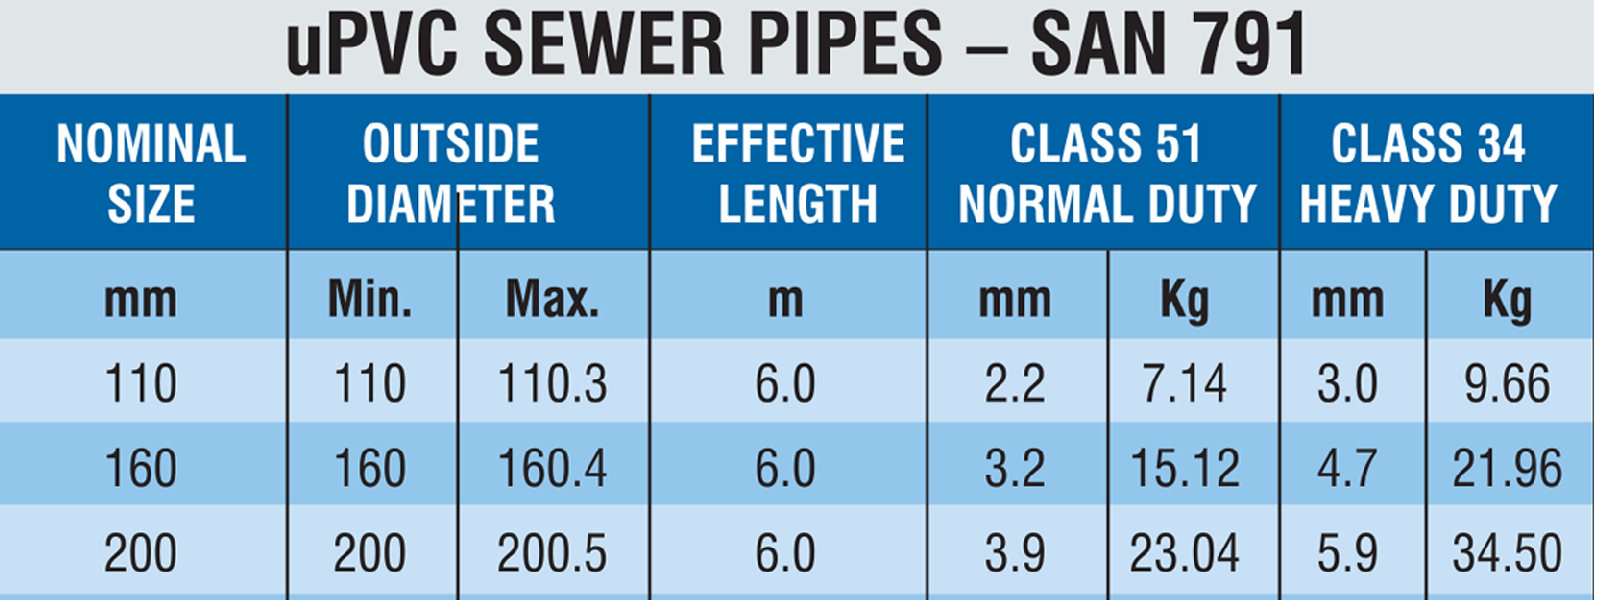 UPVC sewer pipes - zampipe